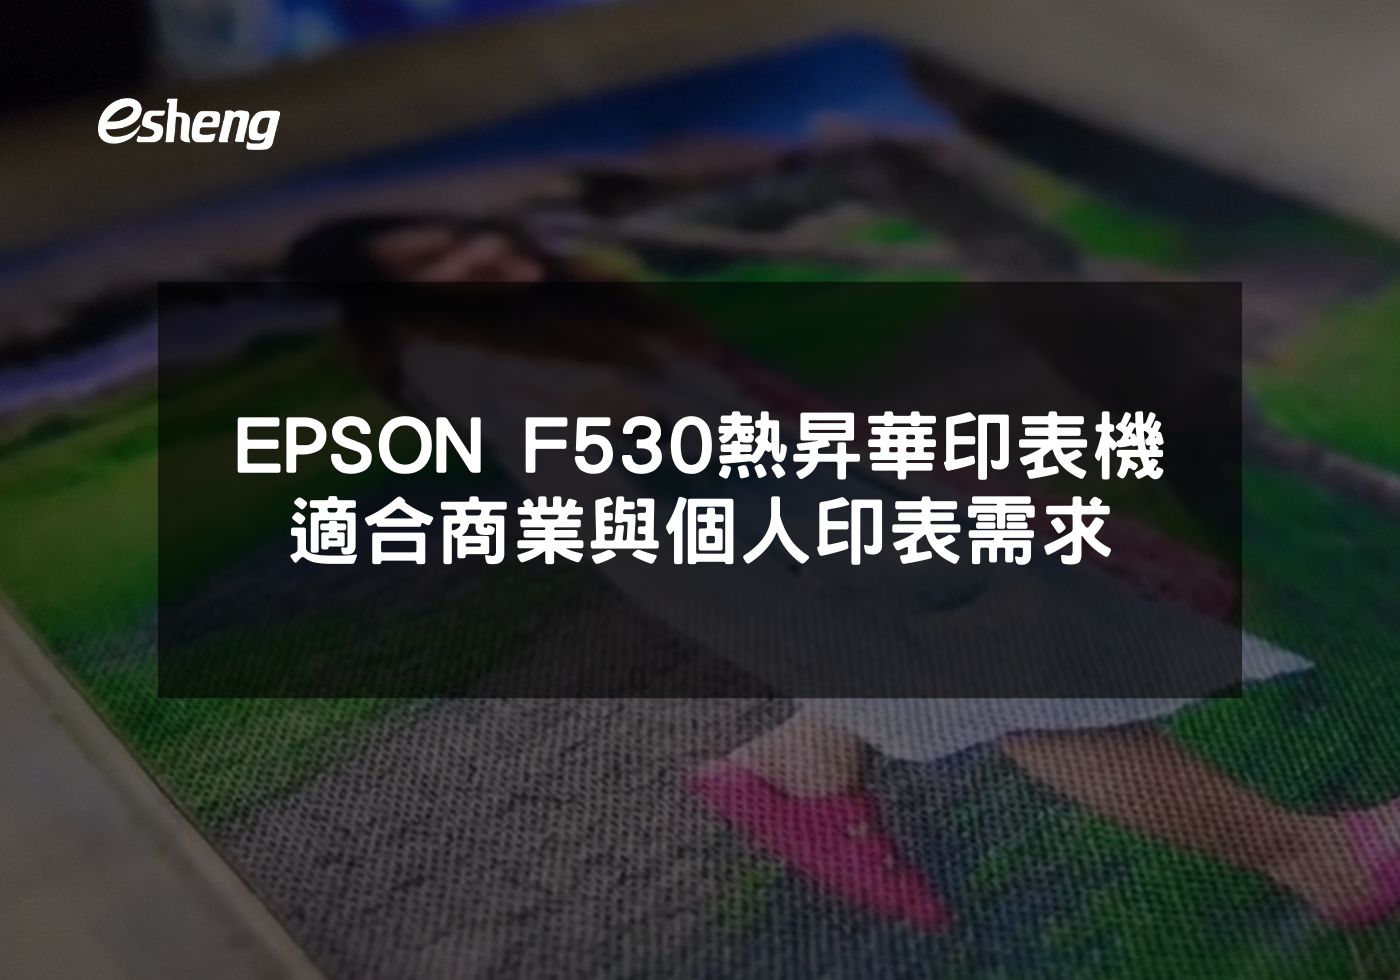 閱讀更多文章 EPSON F530熱昇華印表機高 品質、高效率，適合商業與個人印表需求